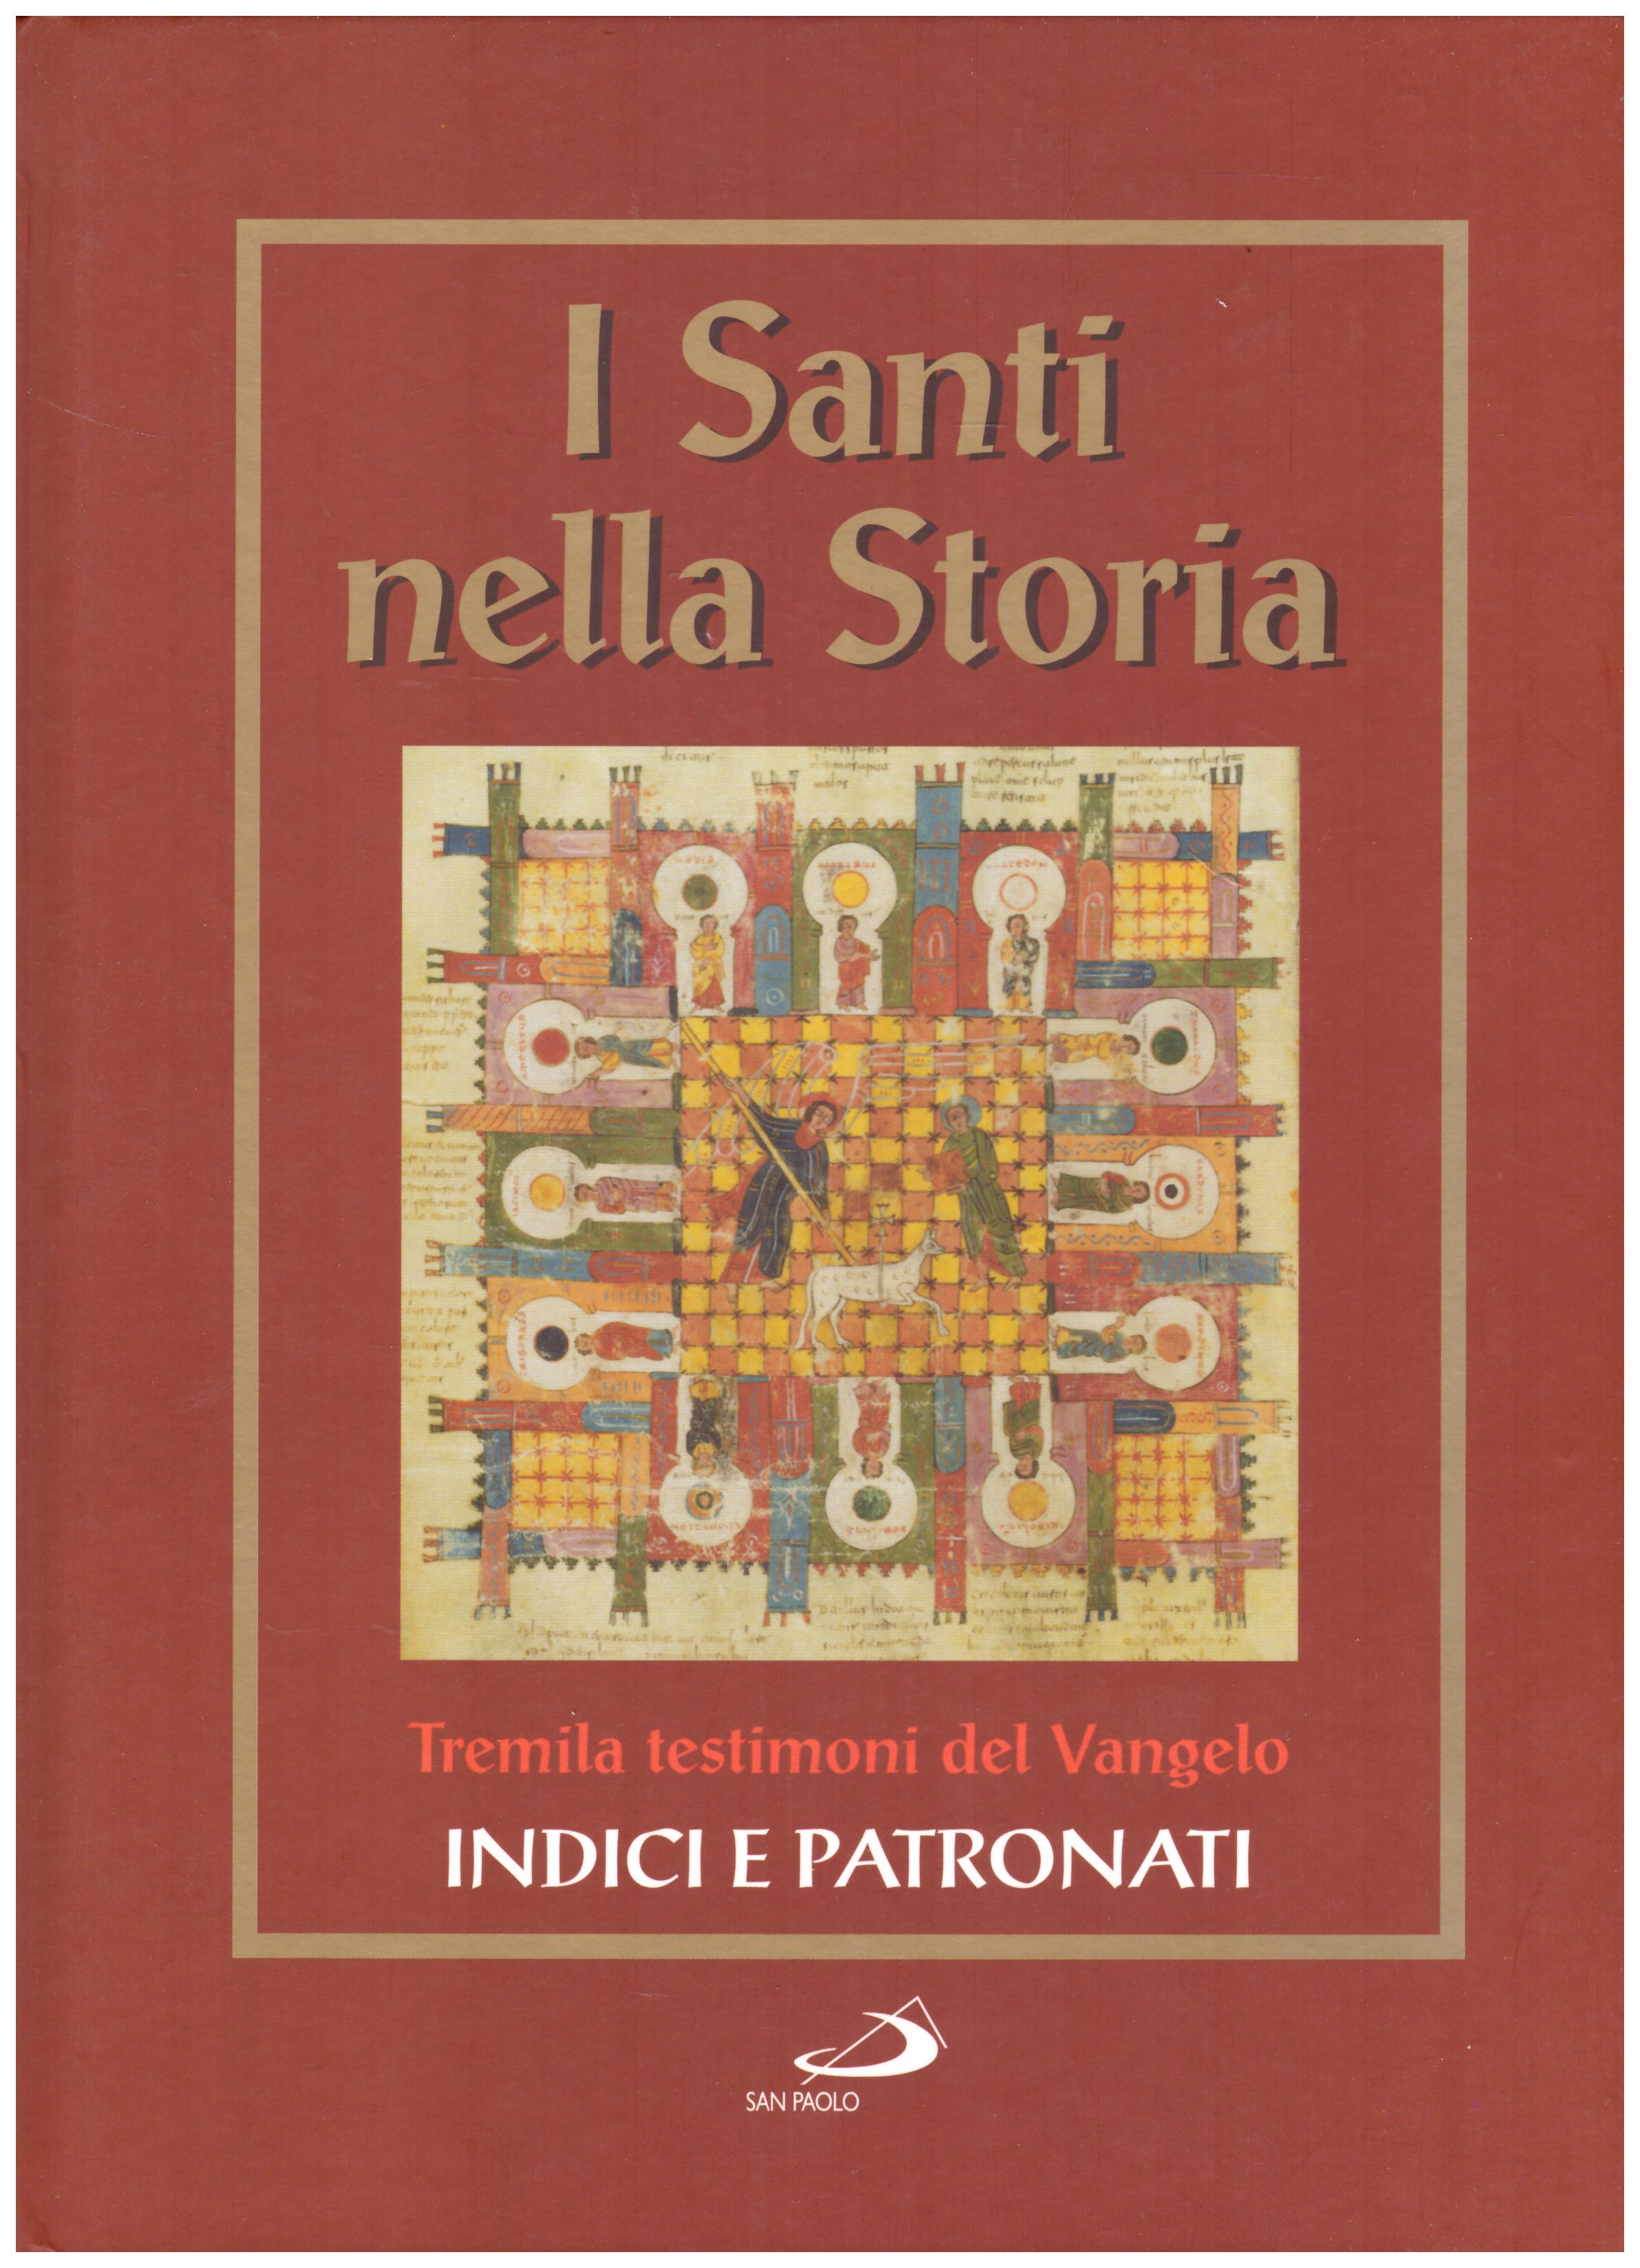 Titolo: I santi nella storia, Indici e patronati Autore: AA.VV.  Editore: San Paolo, 2006